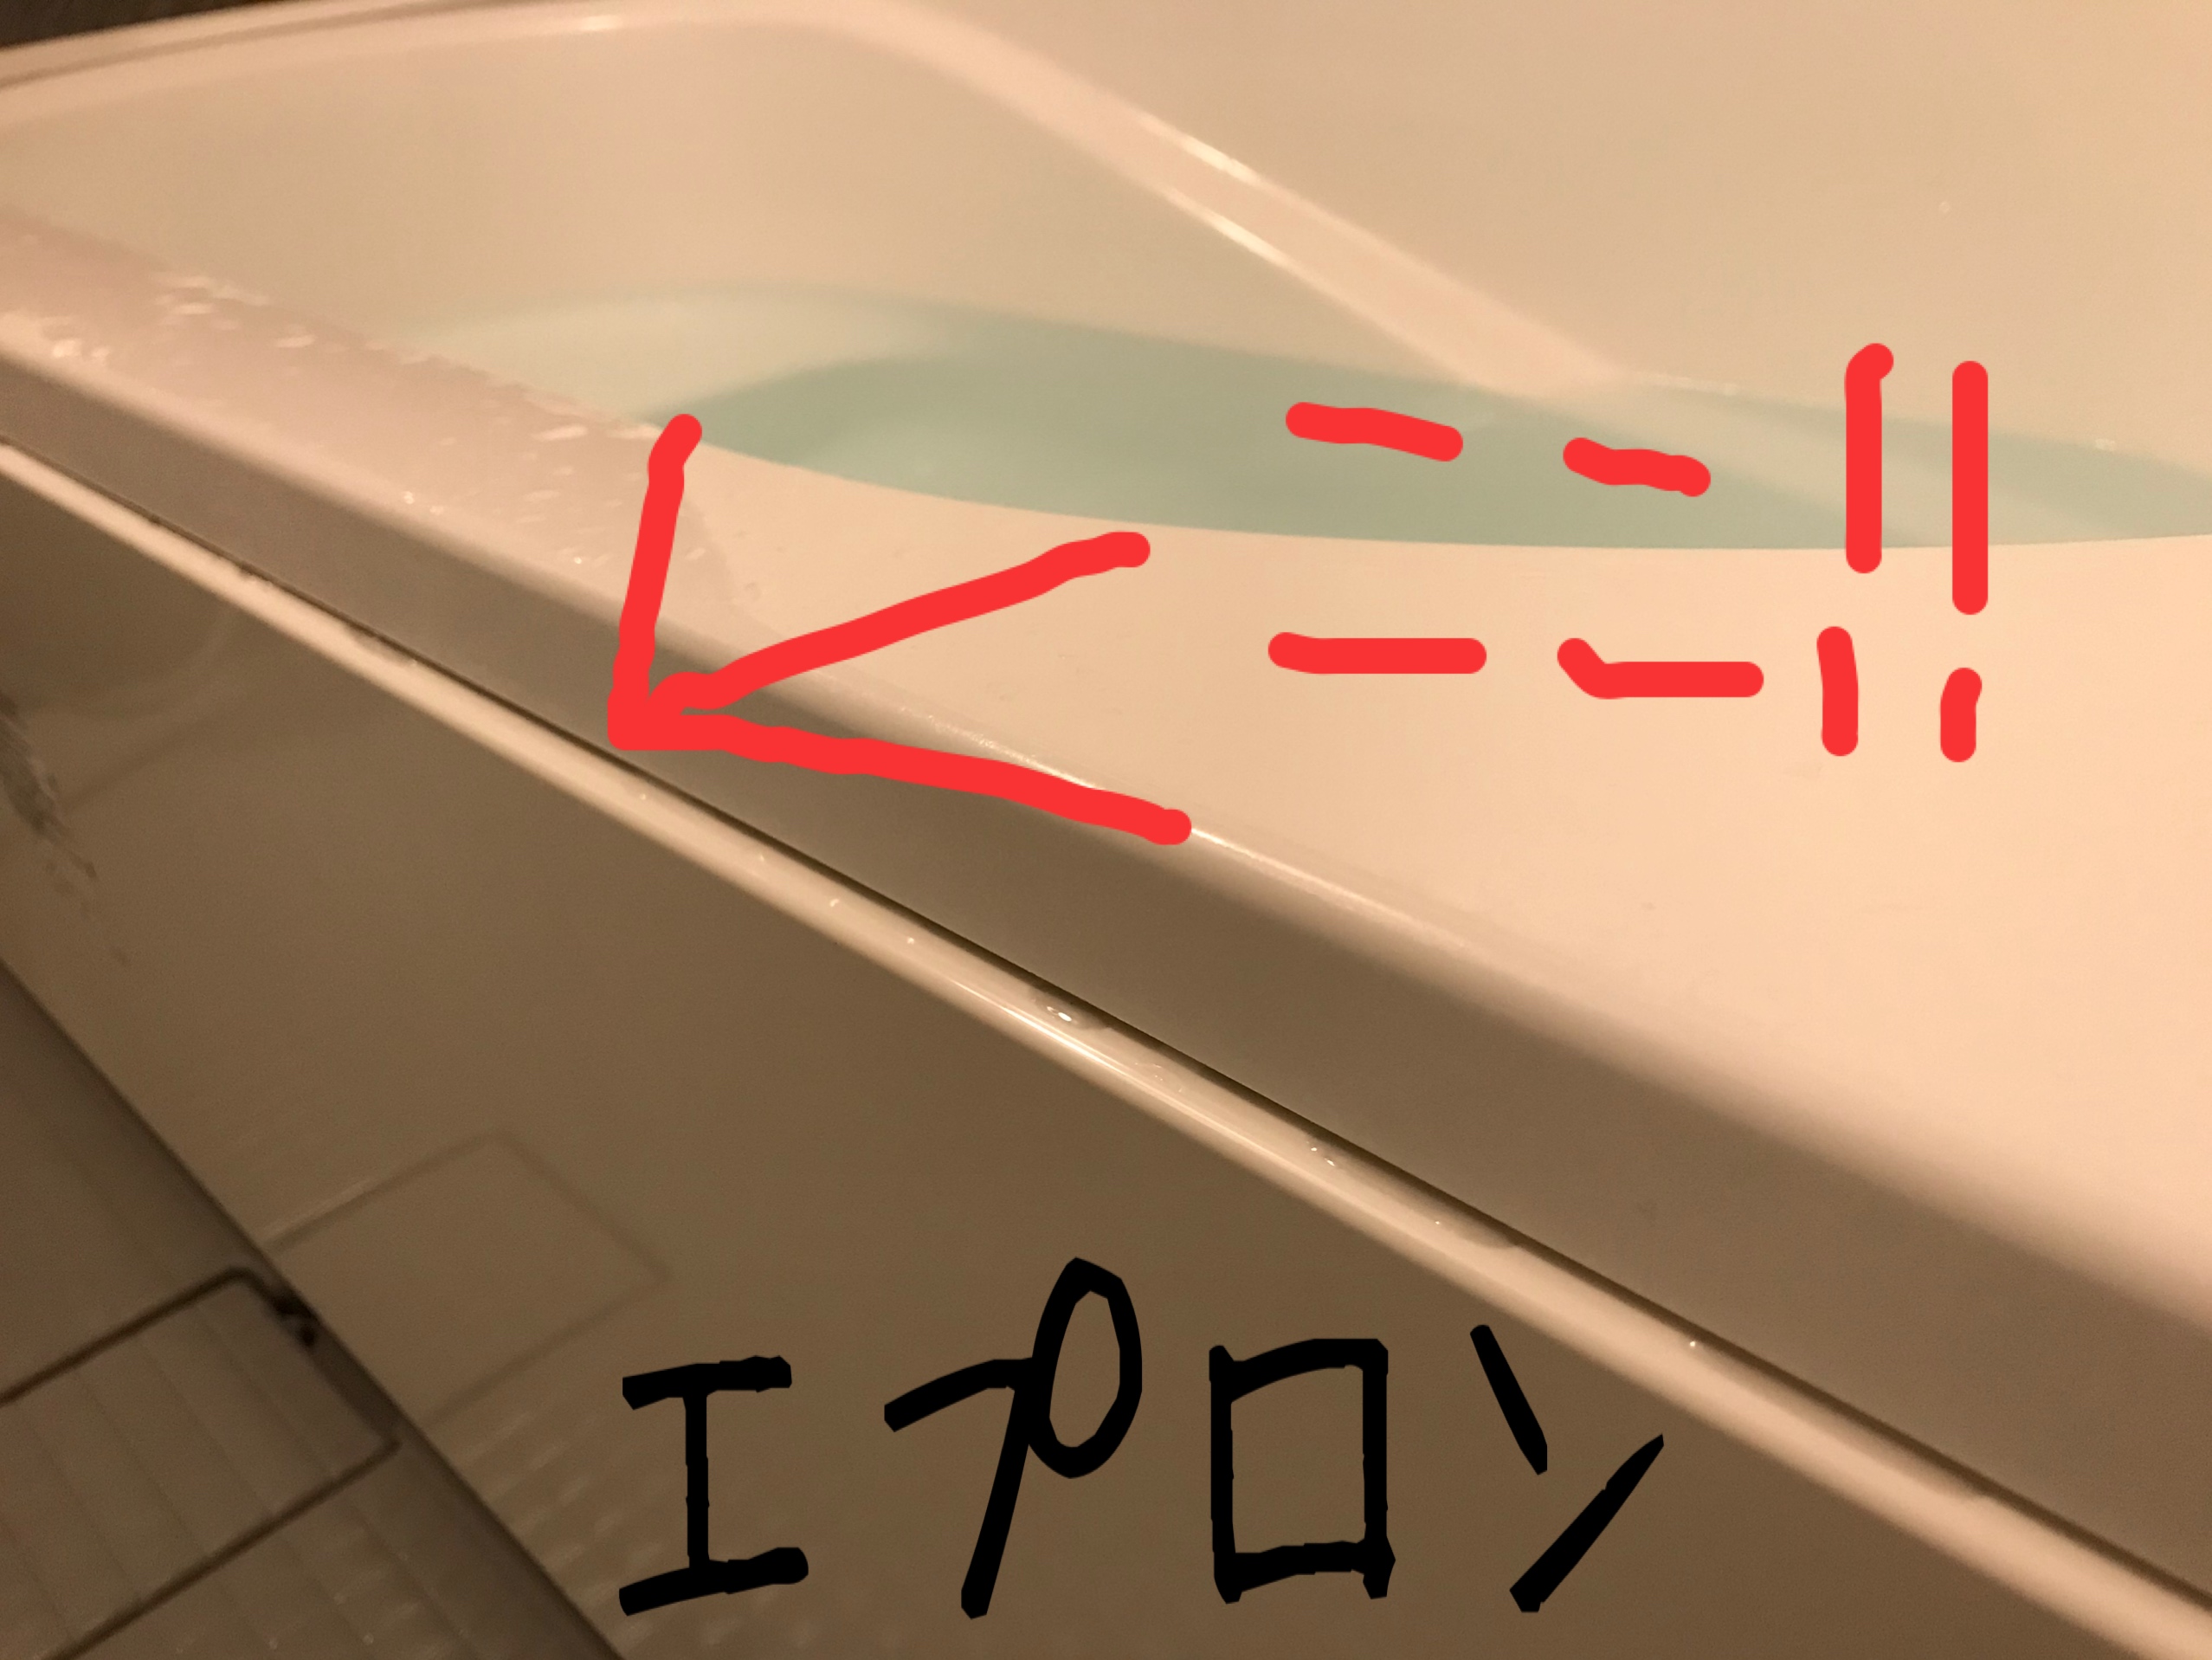 Lixil アライズ の浴槽エプロンは外して洗わないとヤバい 外し方や掃除は簡単